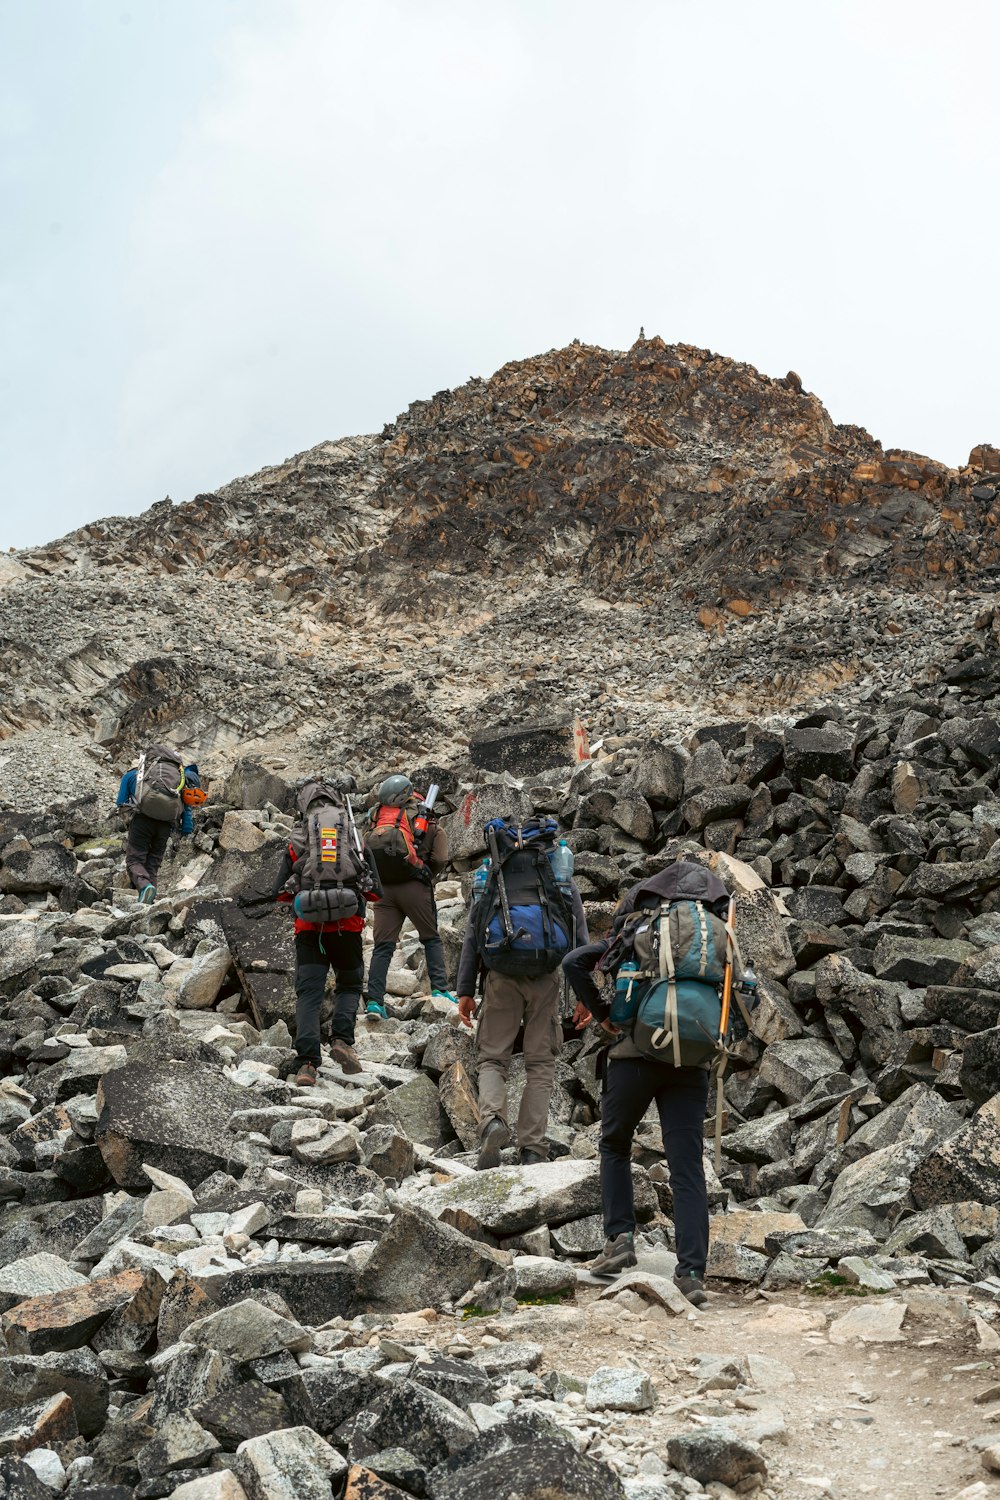 Un groupe de personnes en randonnée sur une colline rocheuse